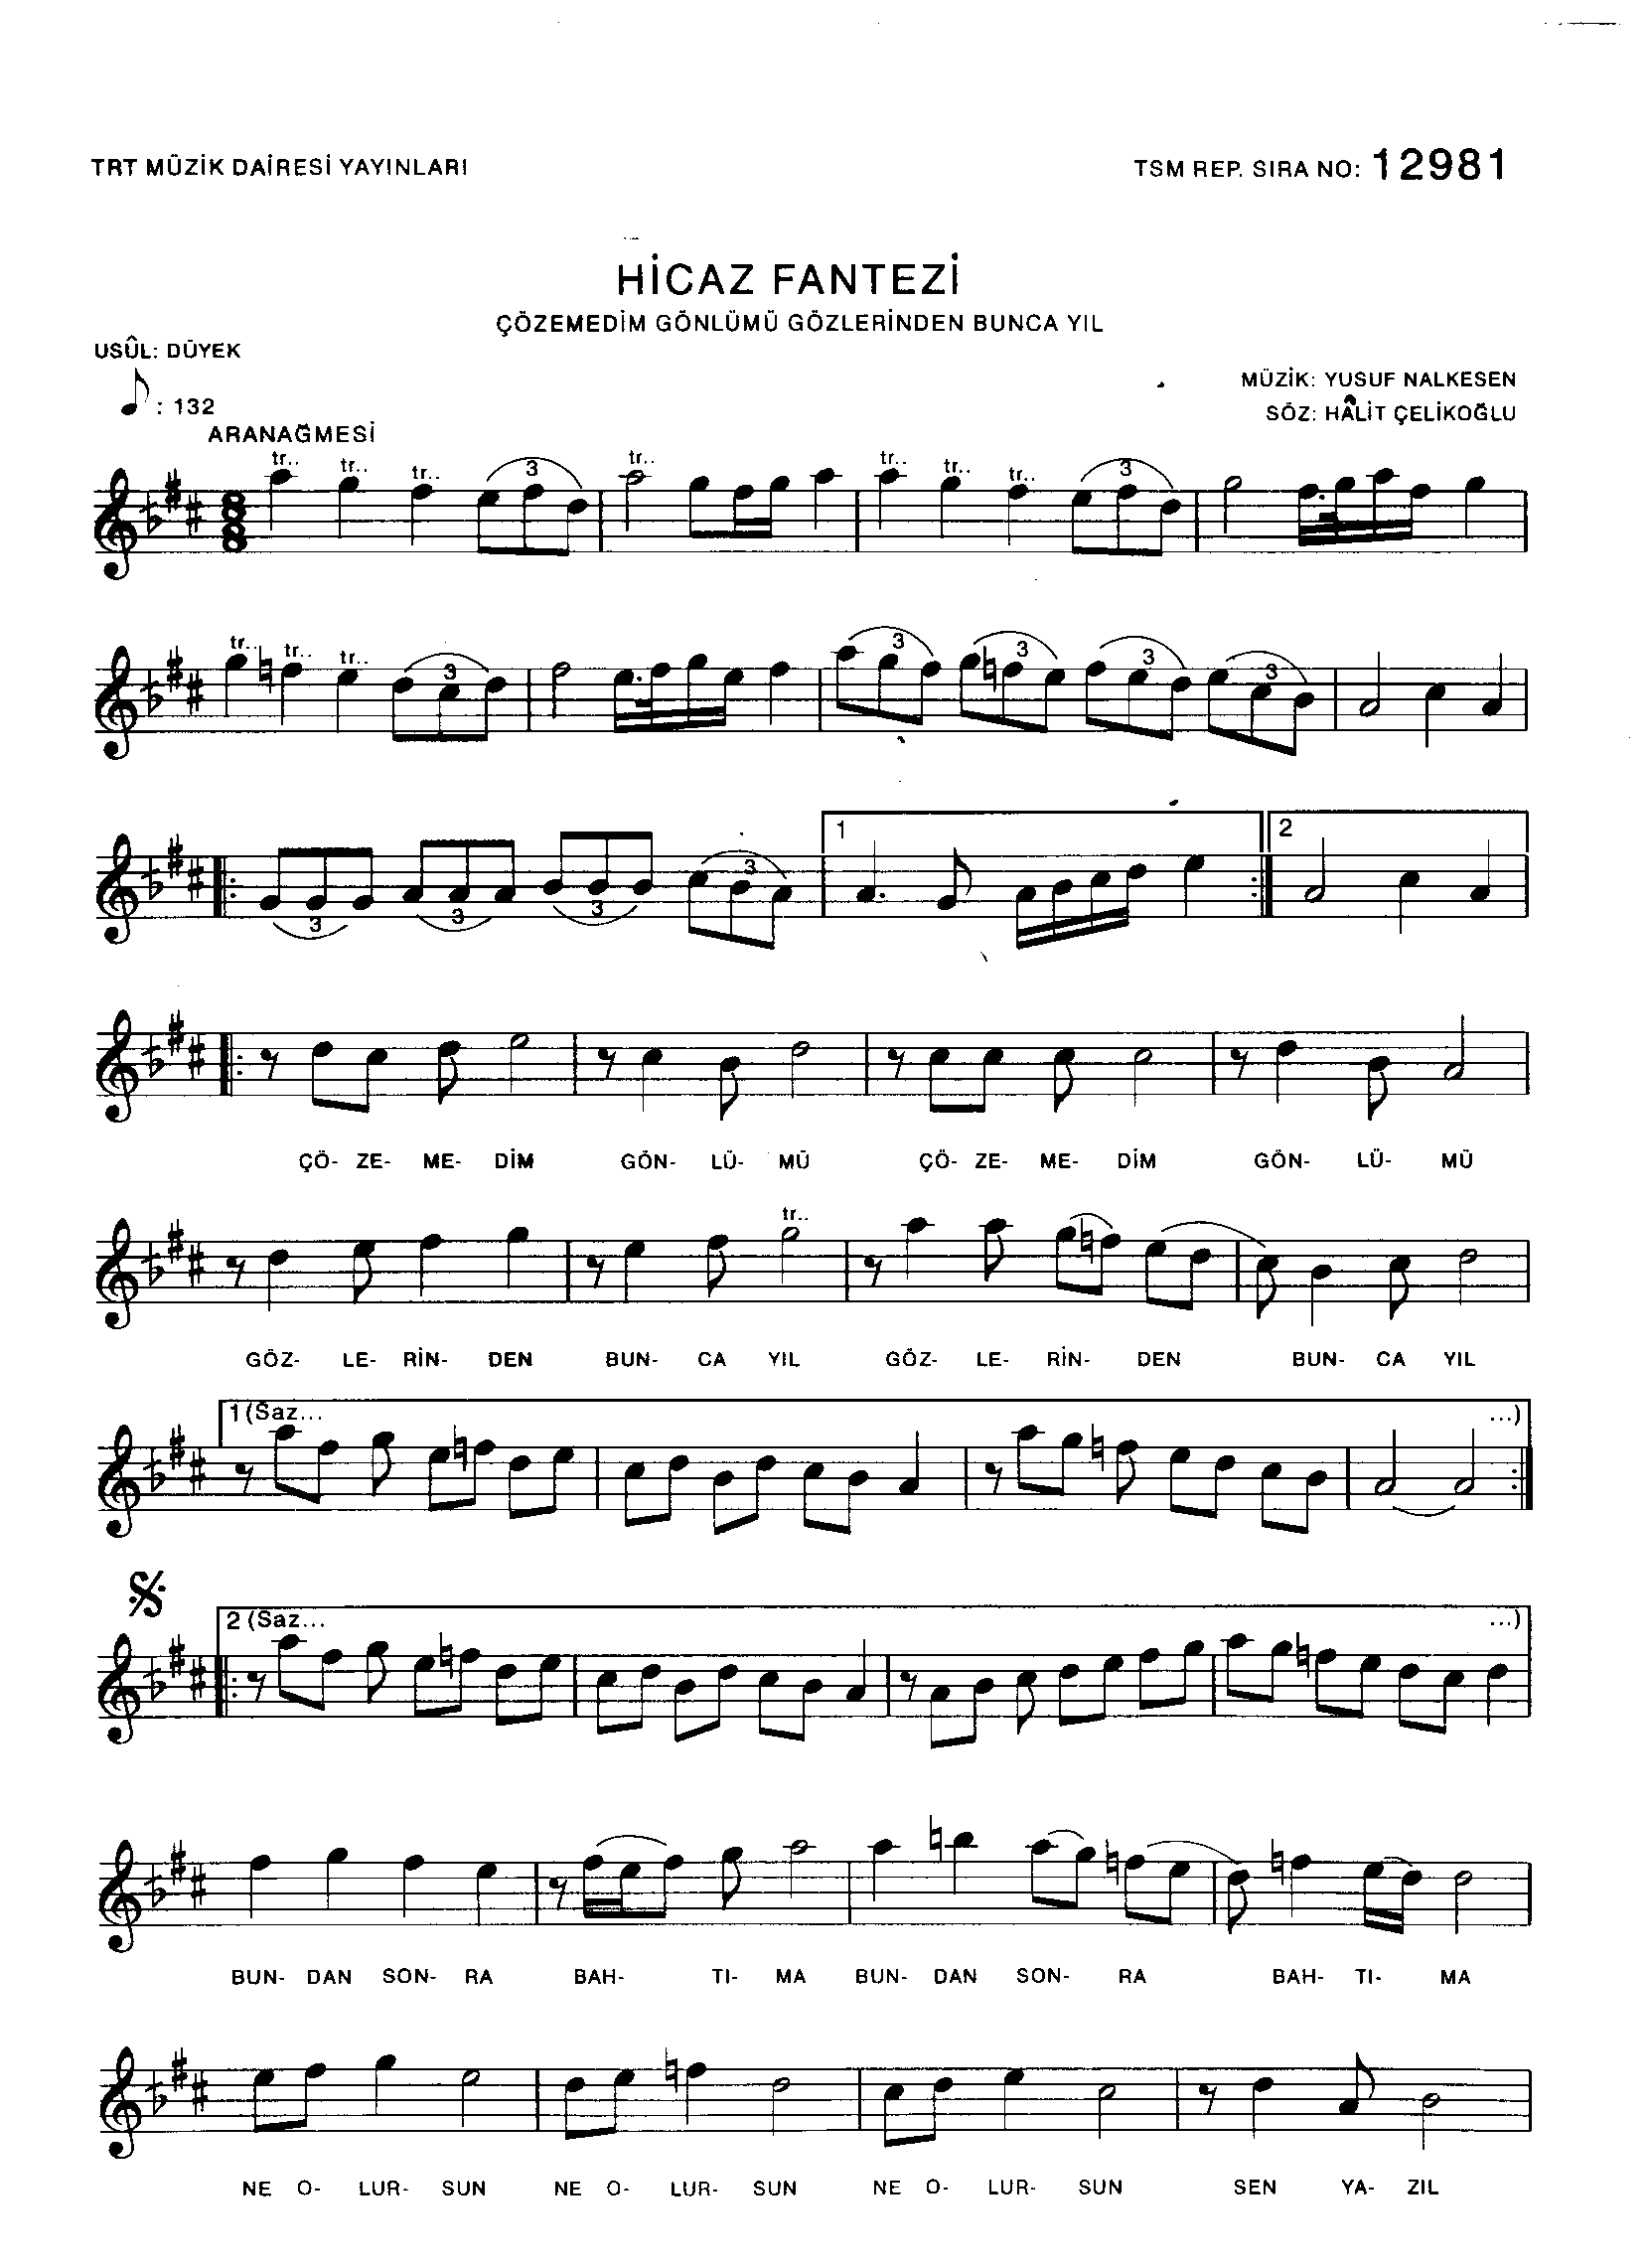 Hicâz - Şarkı - Yusuf Nalkesen - Sayfa 1